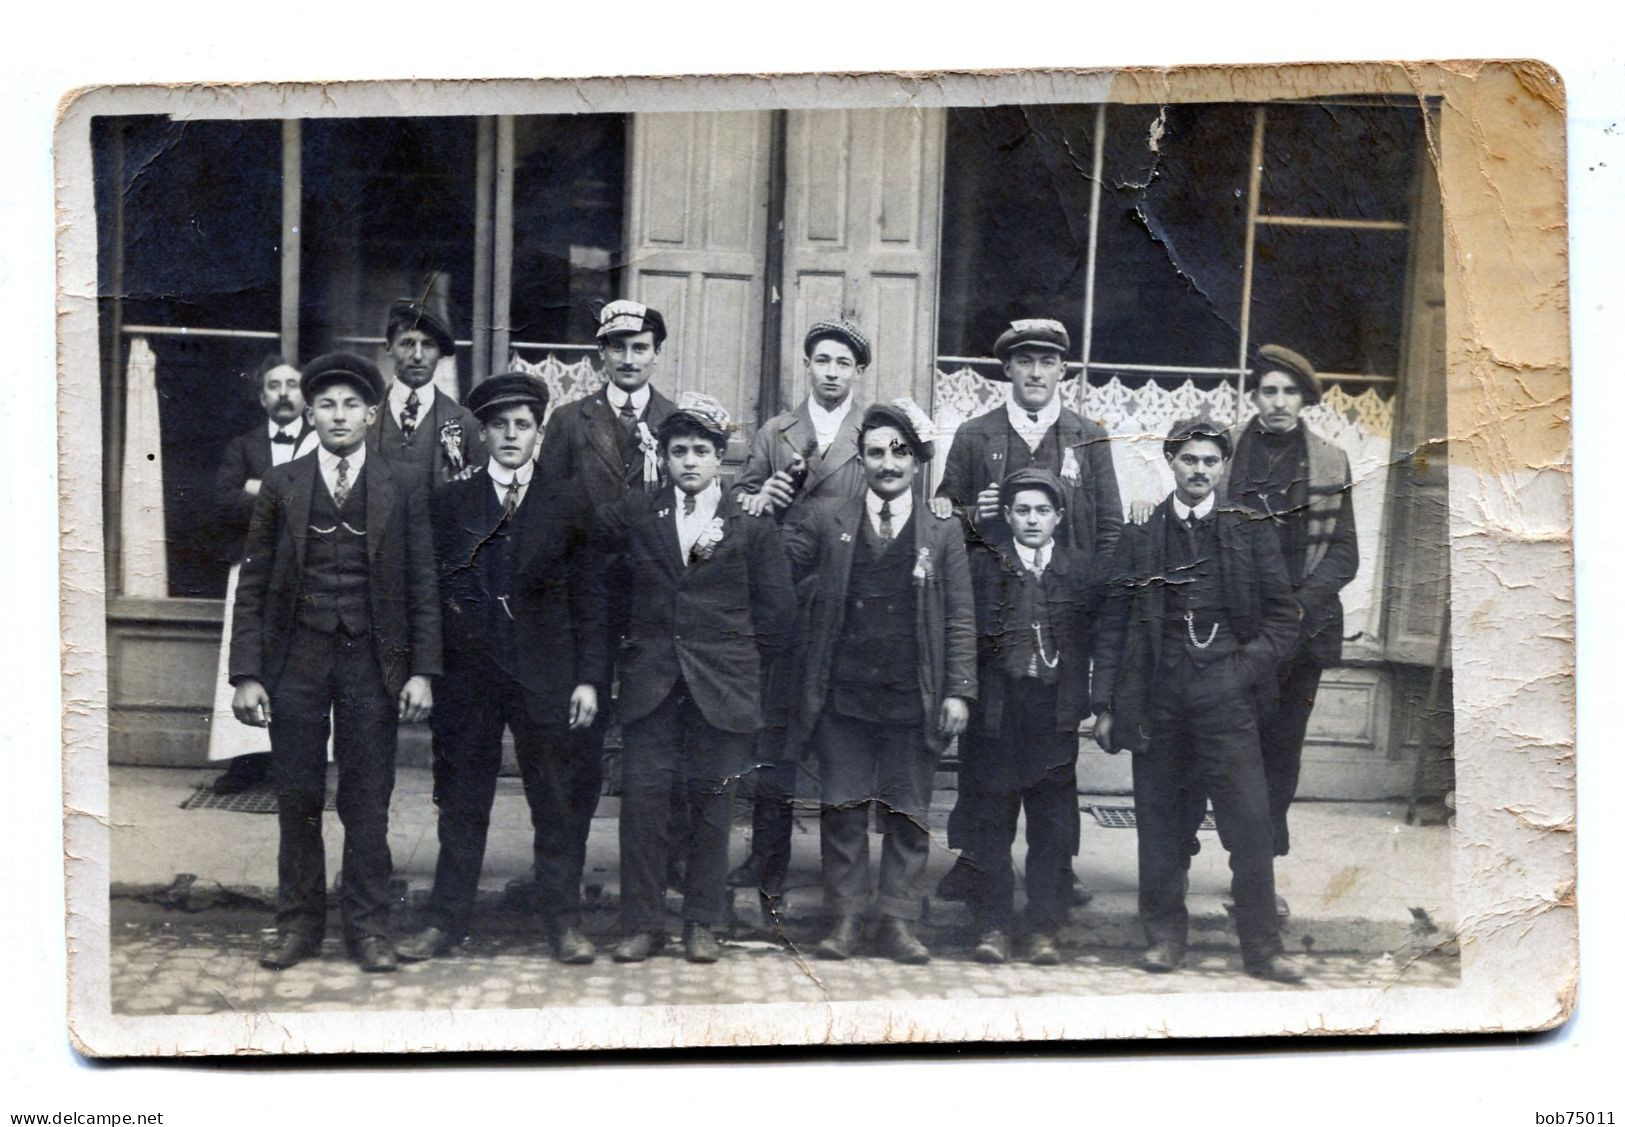 Carte Photo D'hommes élégant ( Des Conscrit ) Posant Devant Un Bar Dans Une Ville Vers 1920 - Personnes Anonymes